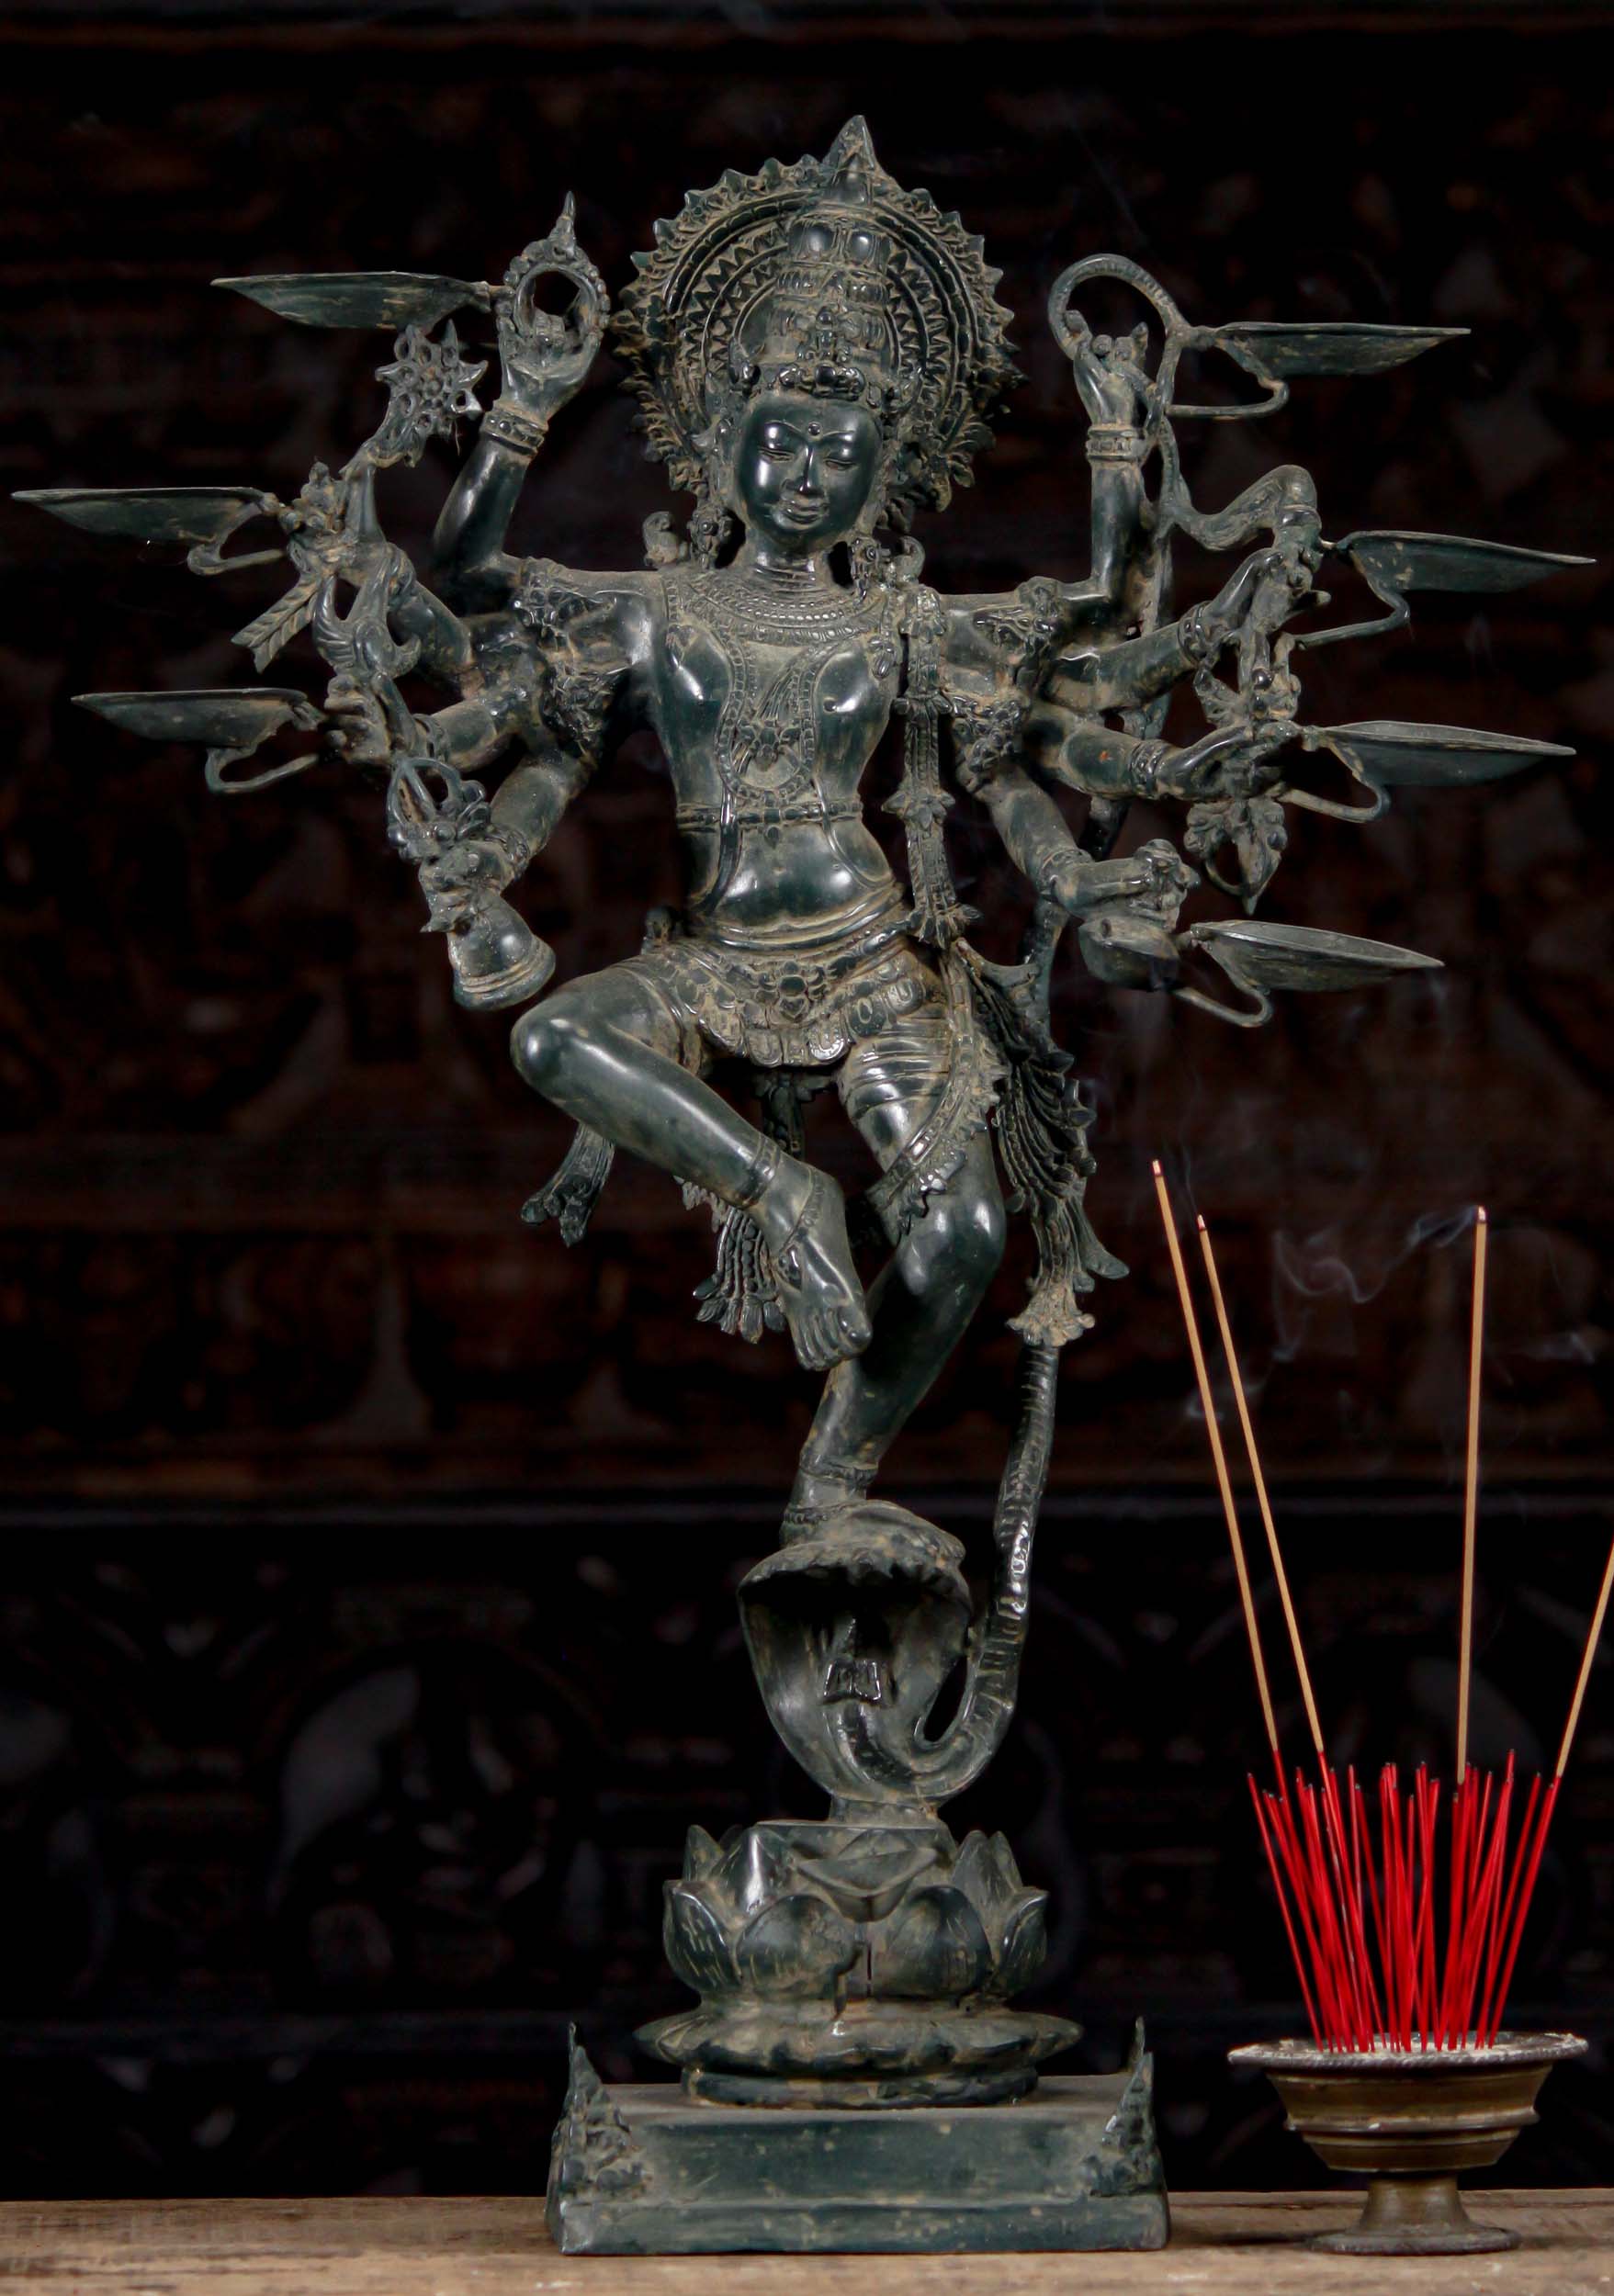 Brass Sculpture of Dancing Krishna Holding A Butter Ball . Height